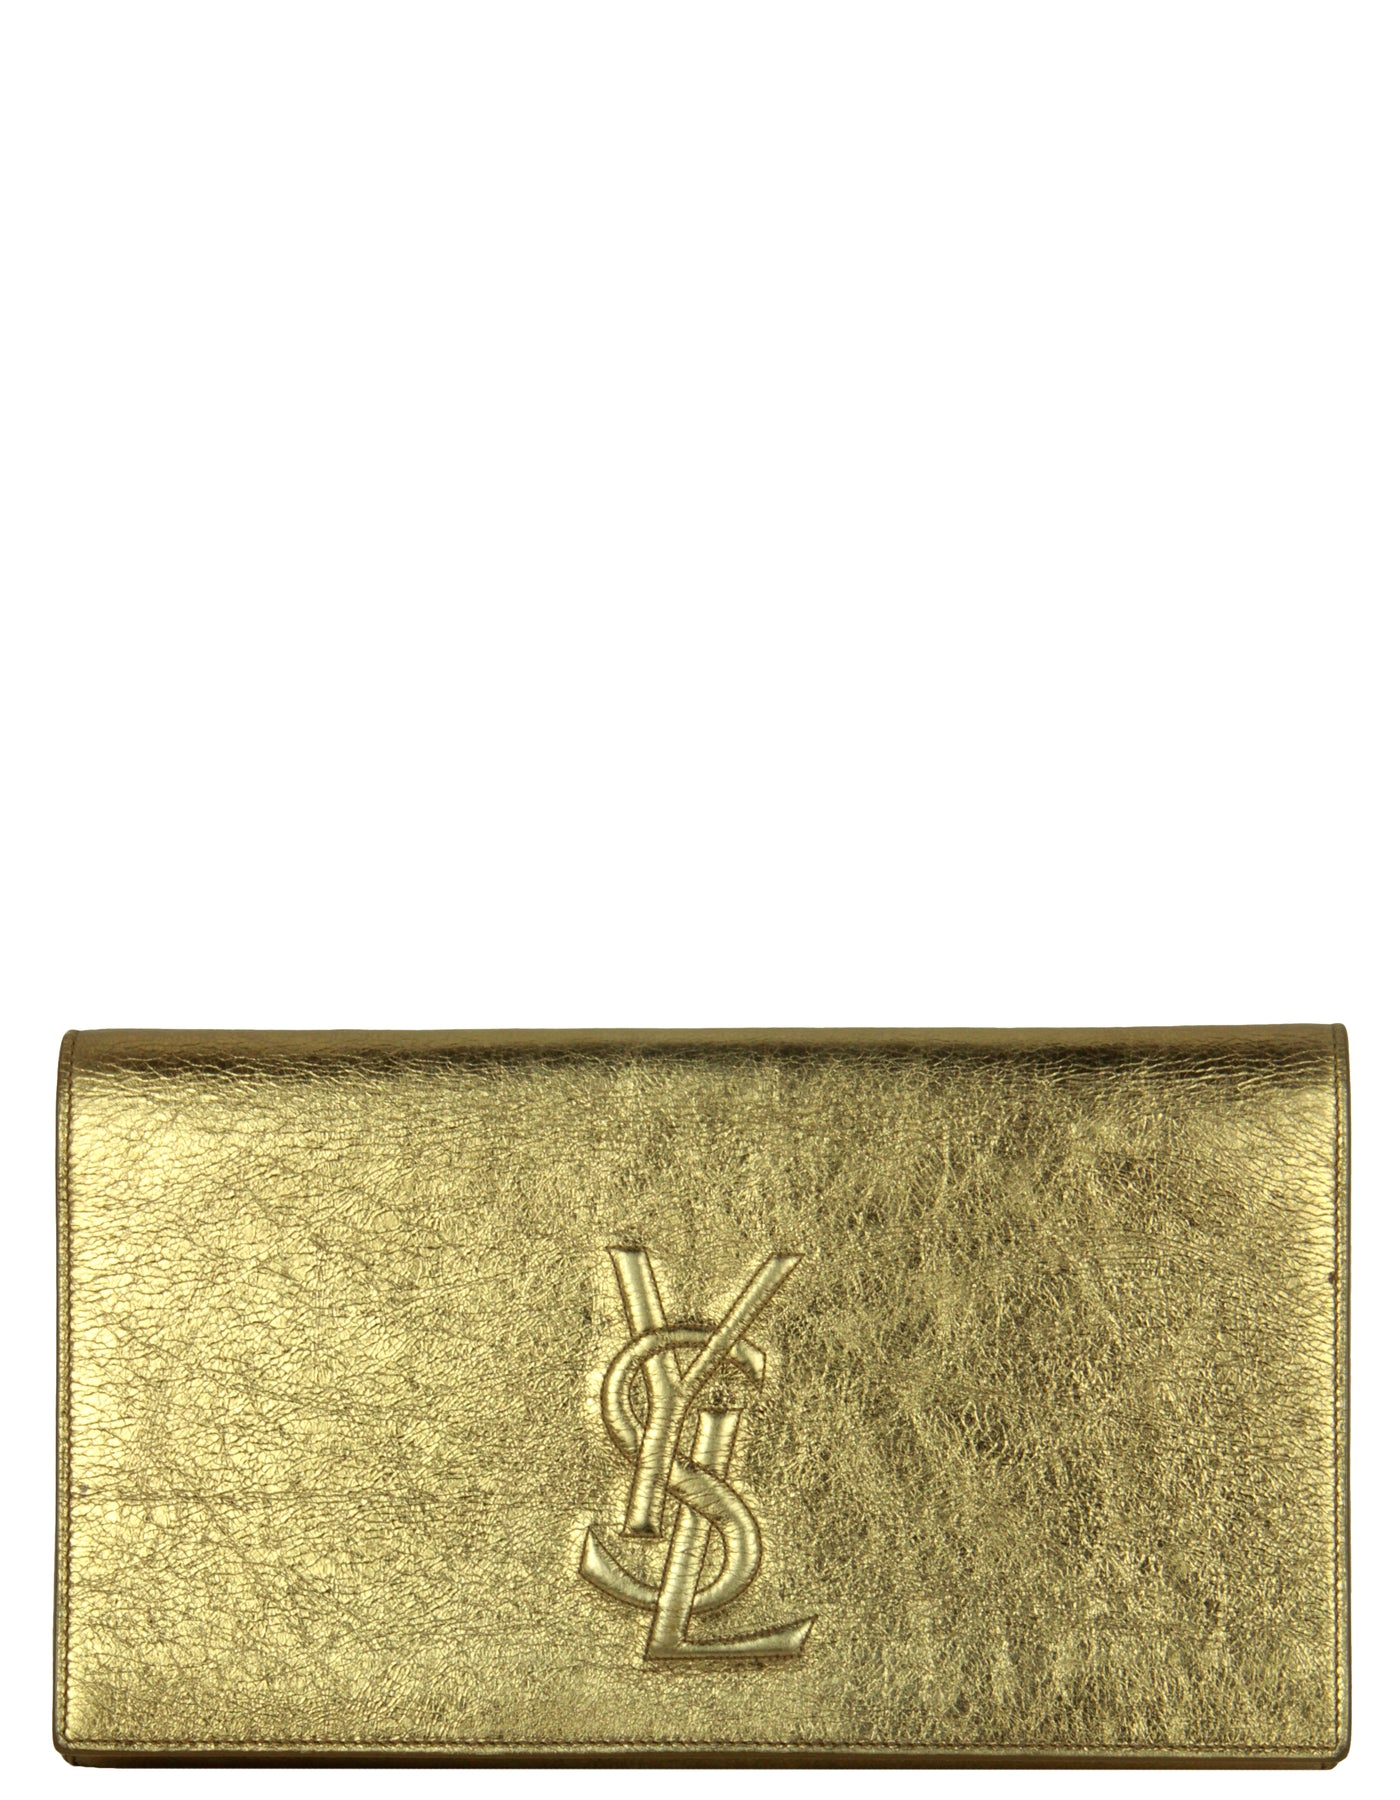 Yves Saint Laurent YSL Gold Metallic Belle de Jour Leather Clutch